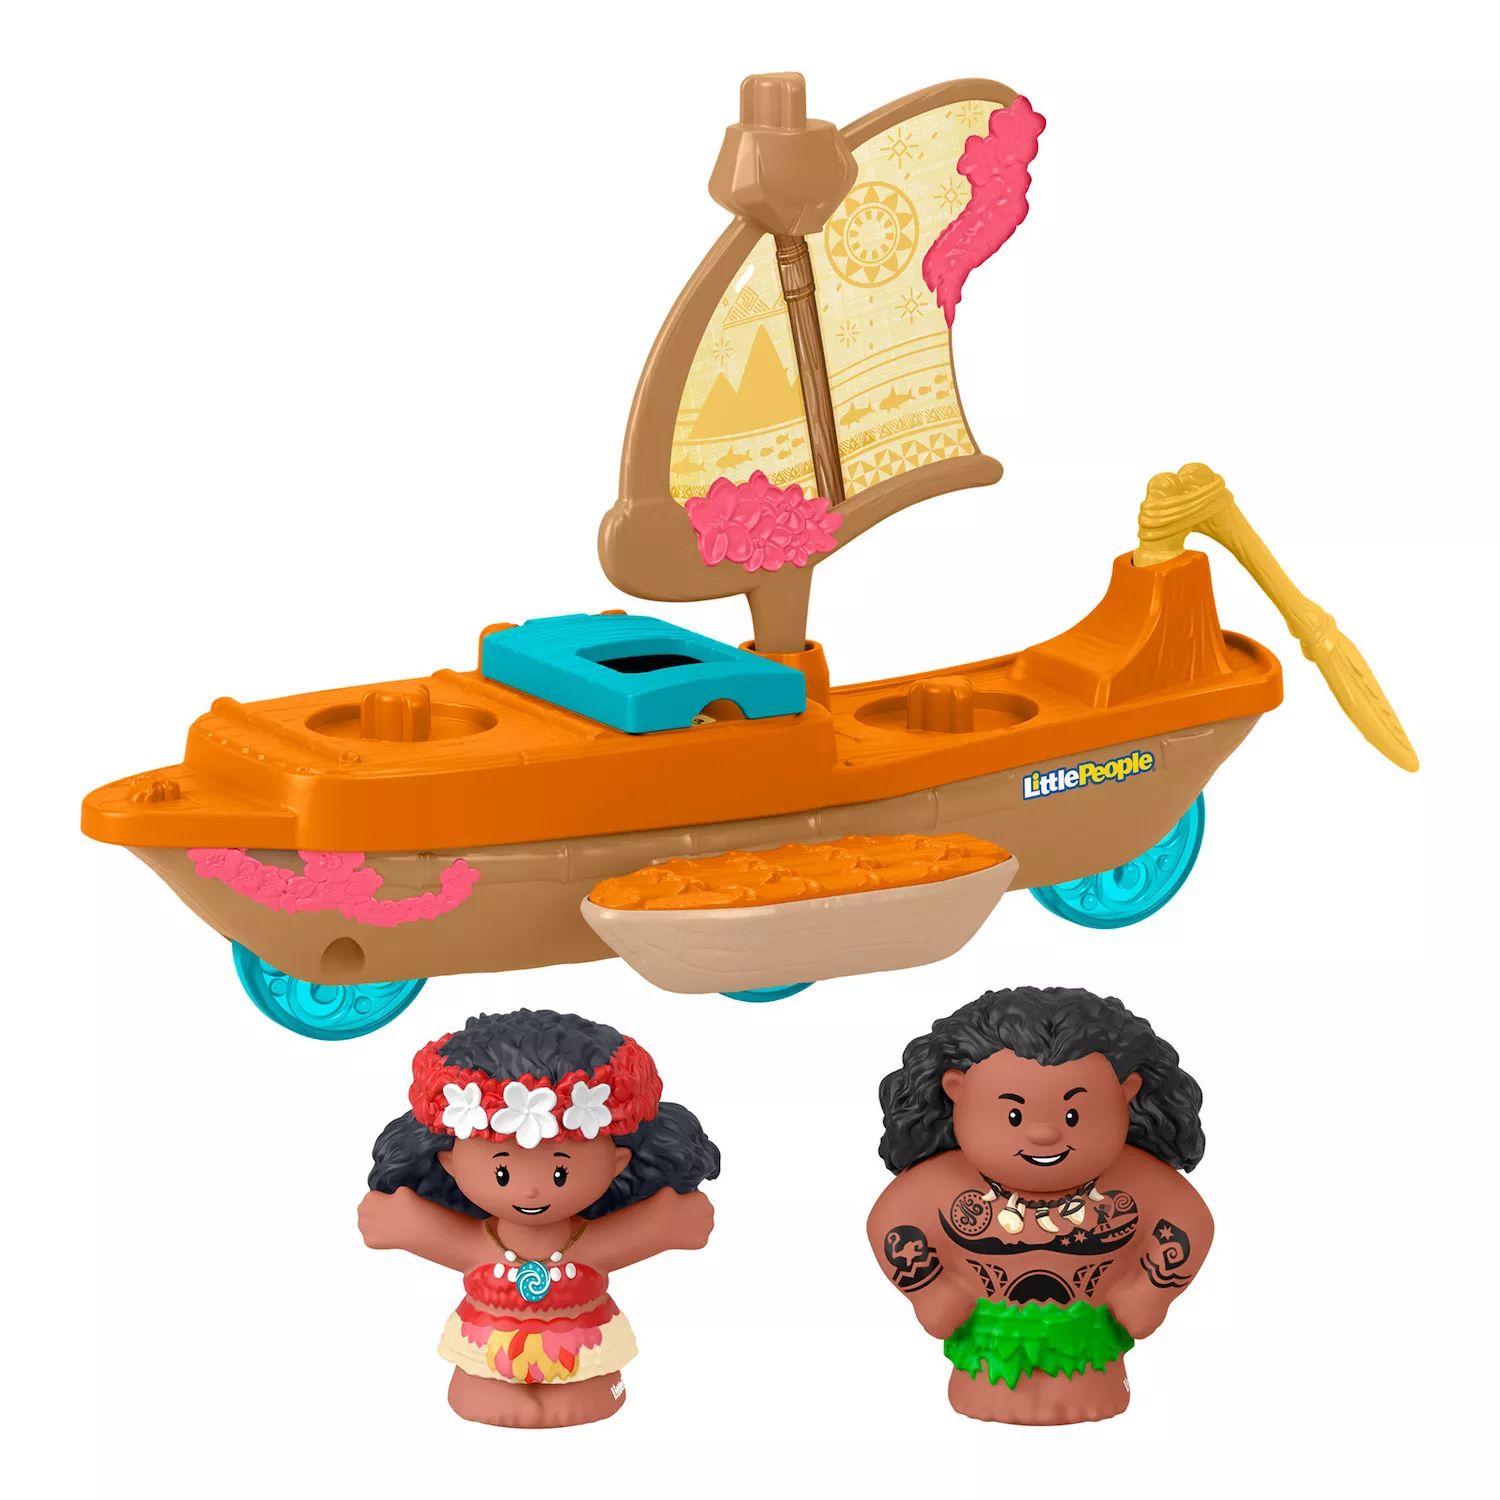 Набор каноэ и фигурок Disney's Moana & Maui Little People от Fisher-Price Little People комплект little people наш ангел 80 см белый